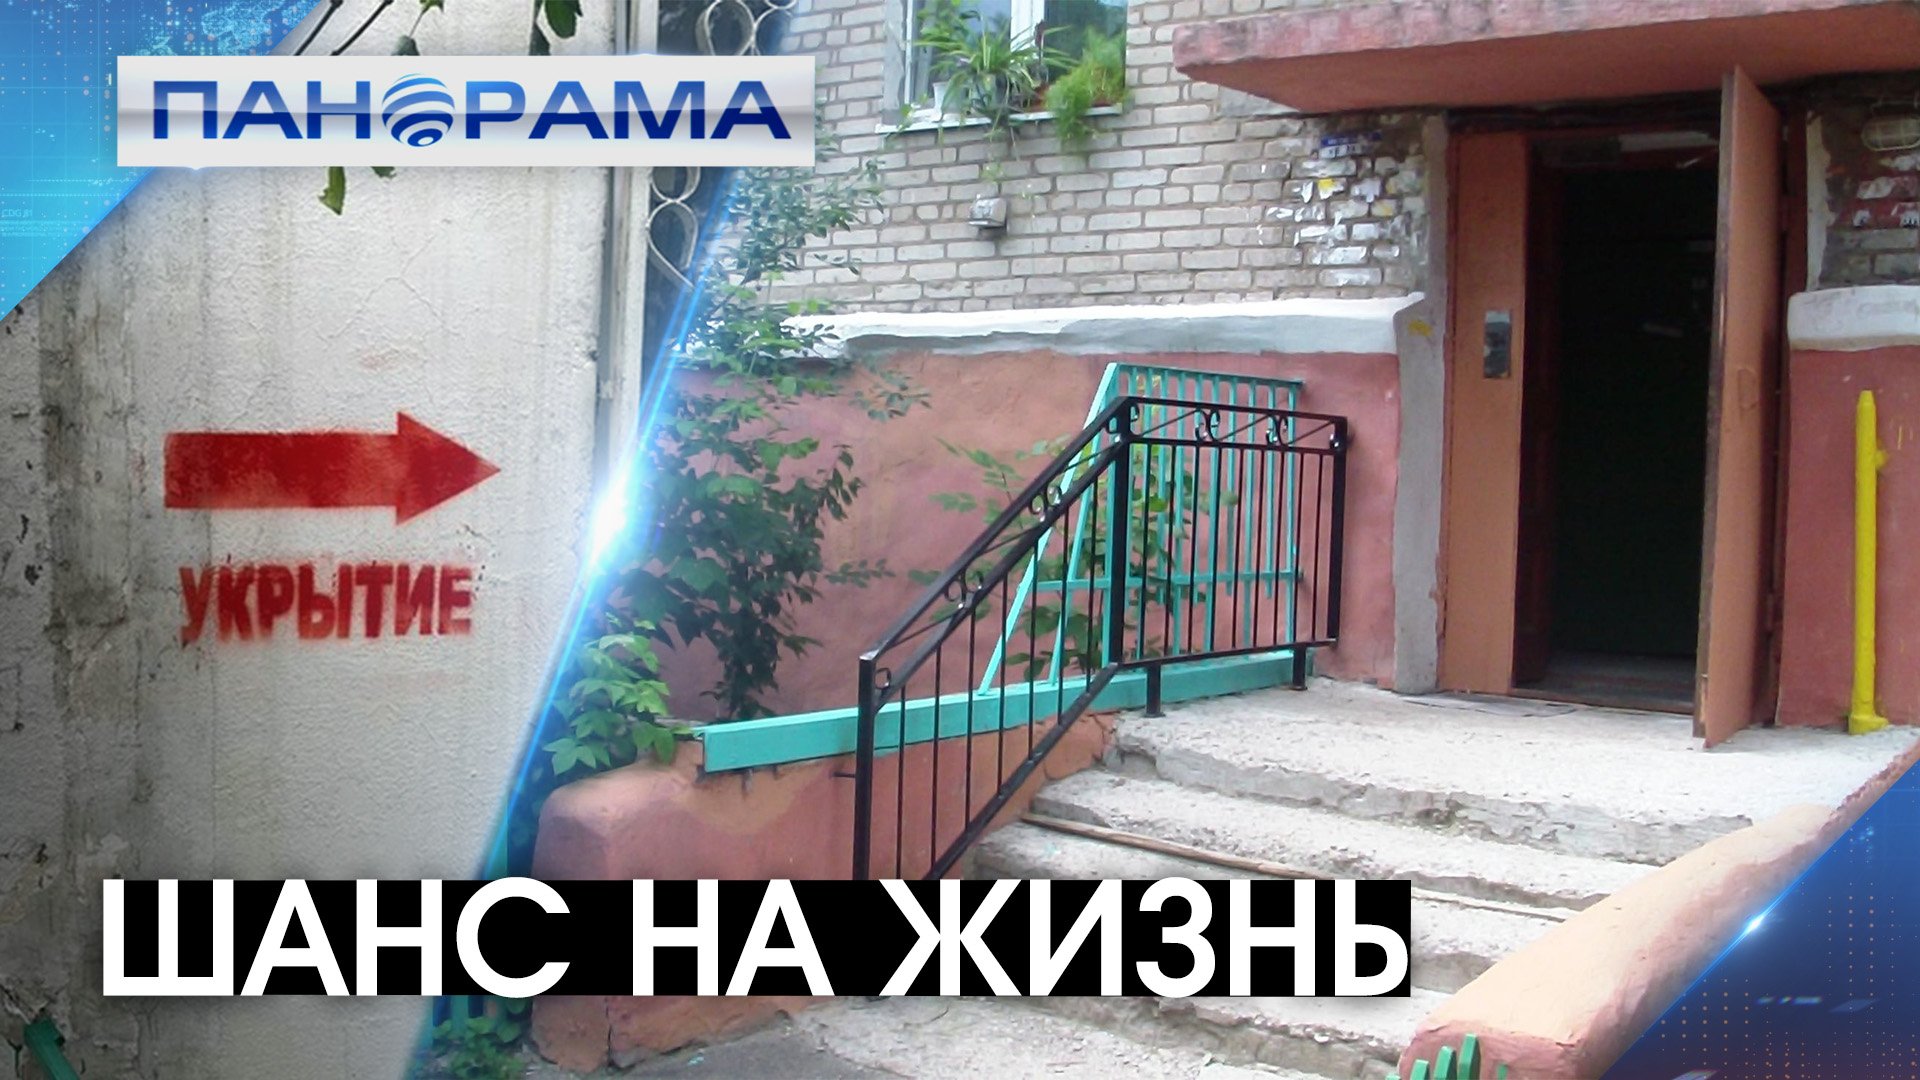 Простое правило спасения: в Донецке проверяют открытый доступ в подъезды. Есть ли у горожан шанс?